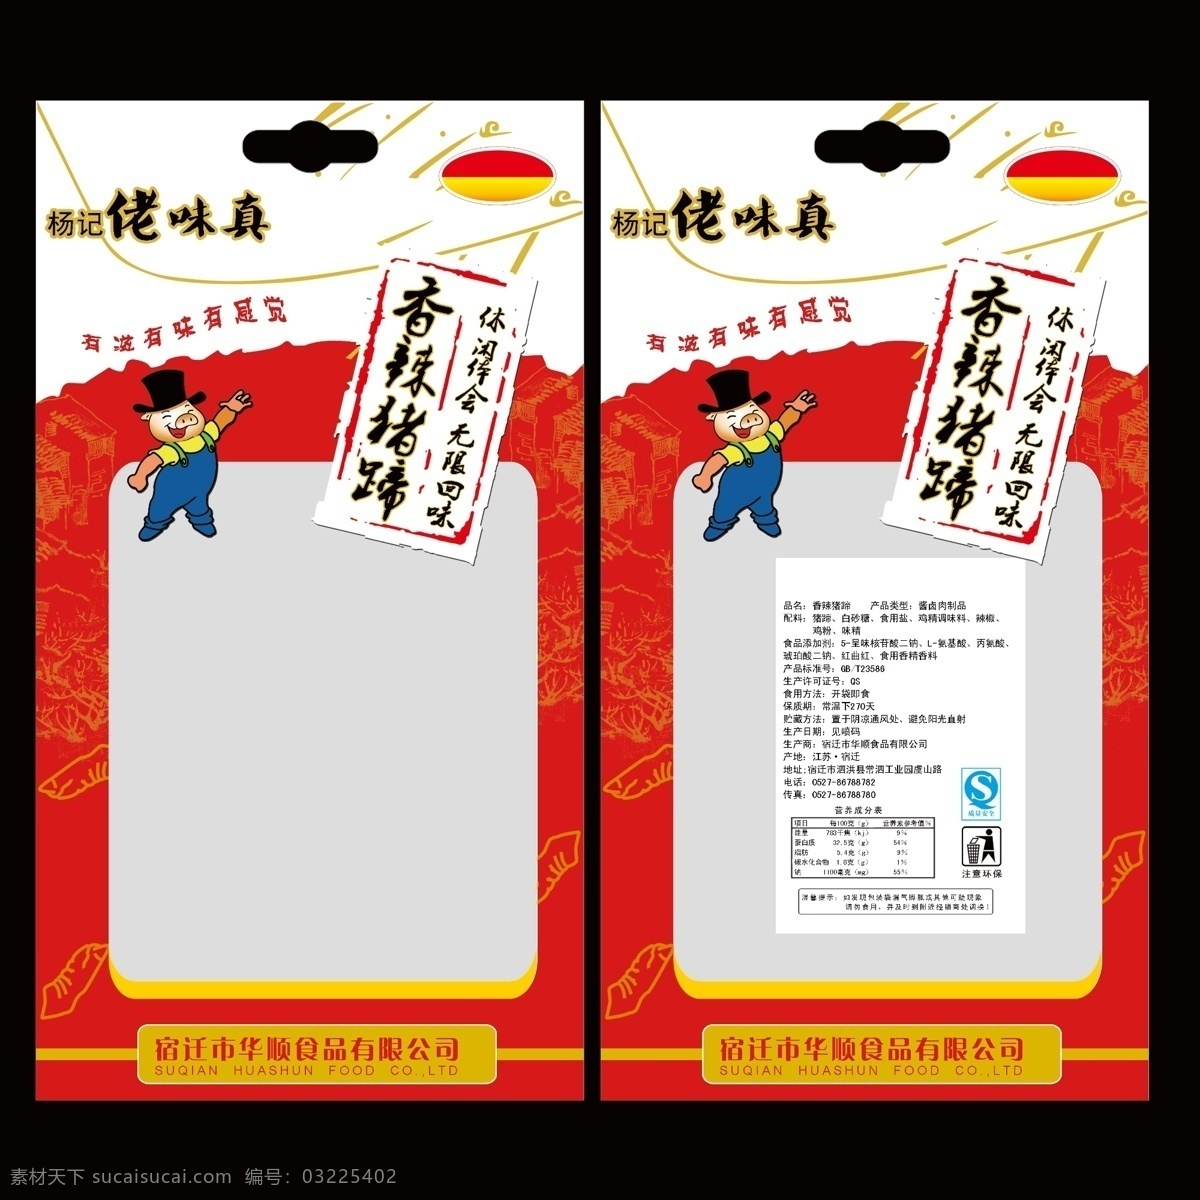 香辣 猪蹄 包装袋 食品包装袋 猪蹄包装袋 香辣猪蹄 中国印 卡通猪 包装设计